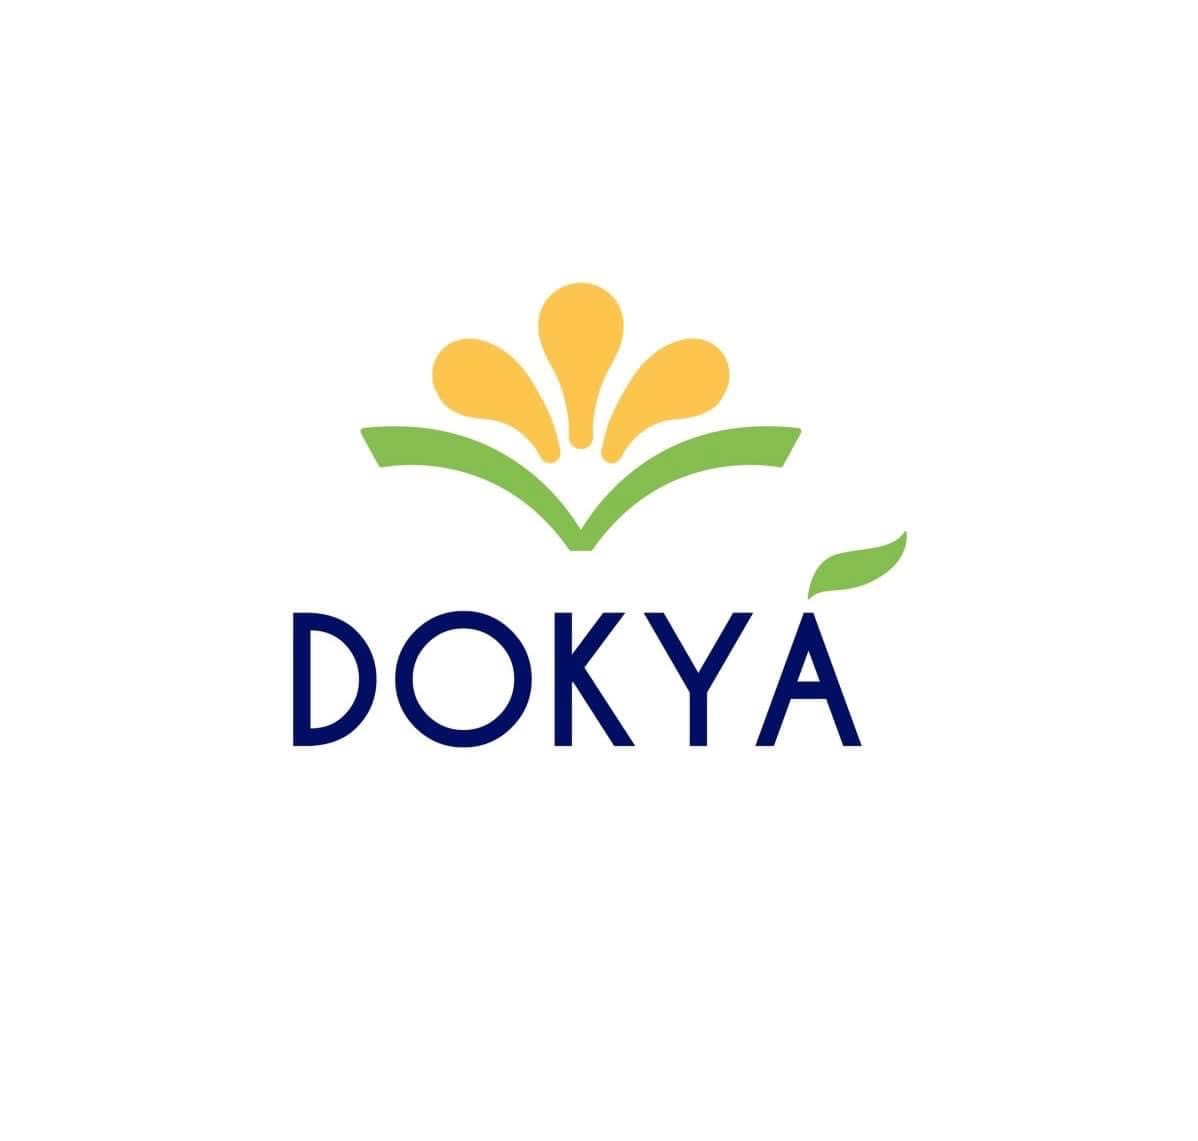 ดอกหญ้าล่าฝัน และวันมหัศจรรย์ คืนชีพแบรนด์ “Dokya eBook”  ดีเดย์วันนี้ ! ทุ่มกว่า 2 แสน จัดประกวด 3 เวทีรวด พร้อมเปิด Dokya Academy แบบไม่มีกั๊ก